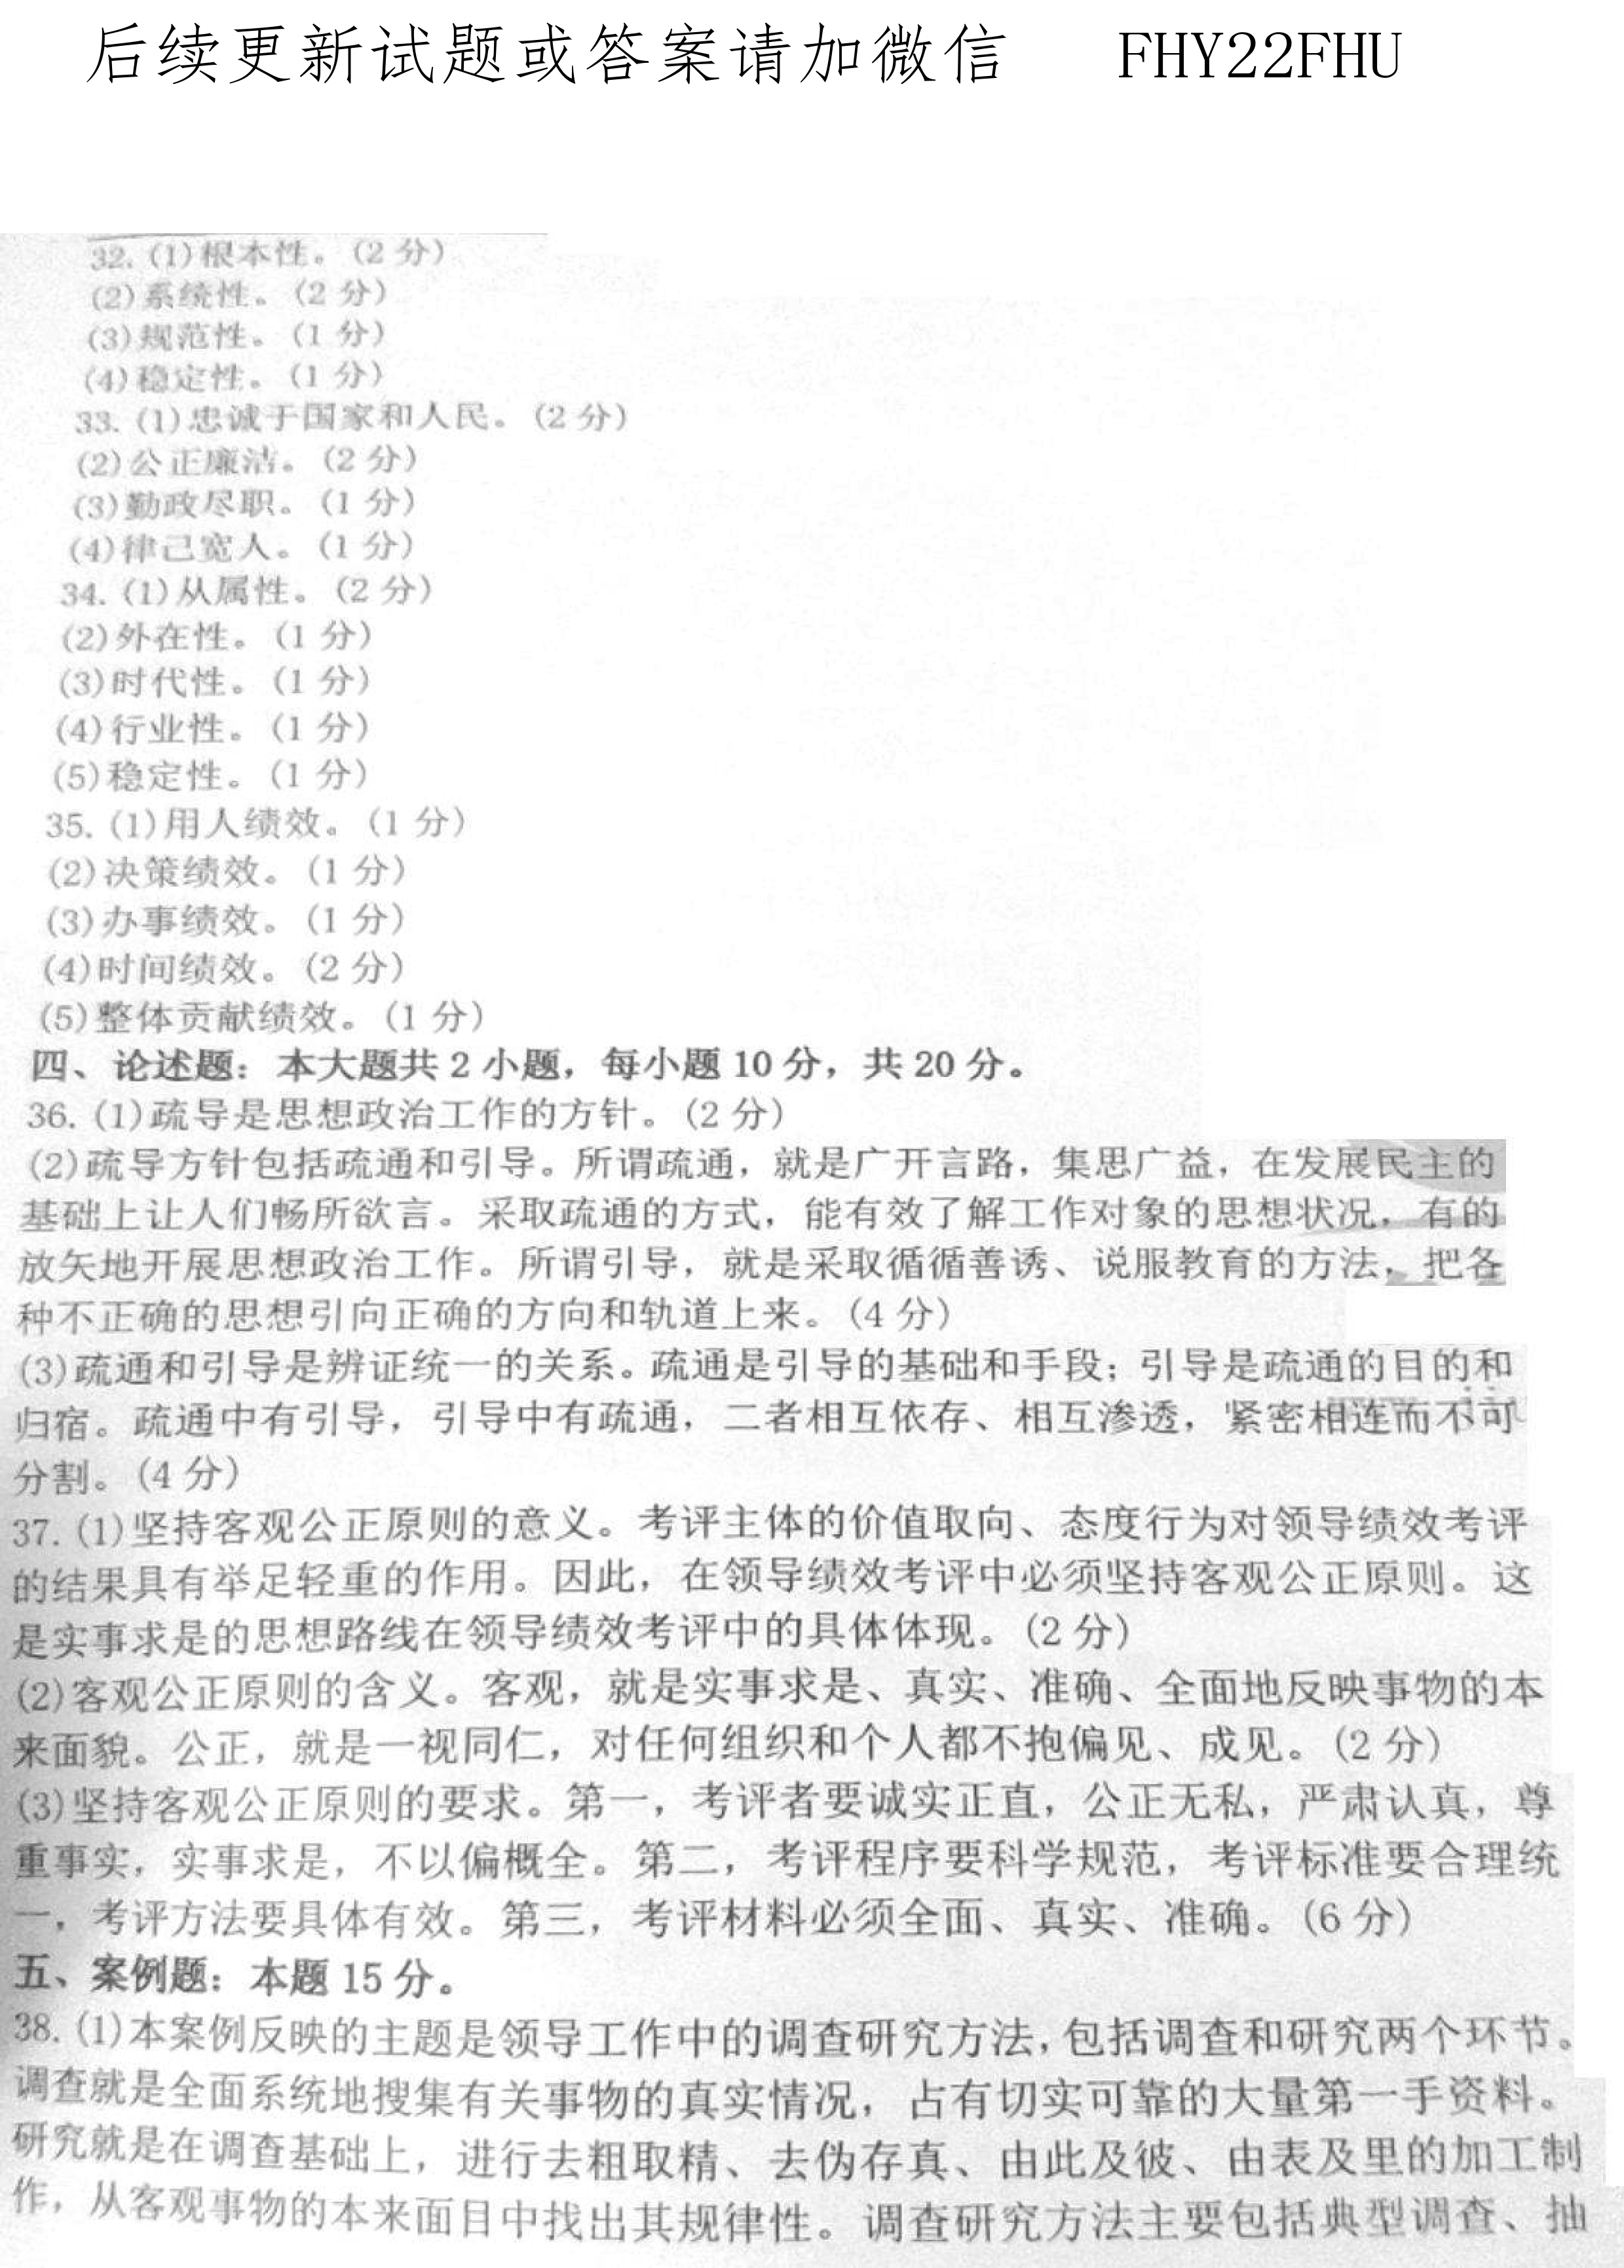 2020年10月贵州省自学考试00320领导科学